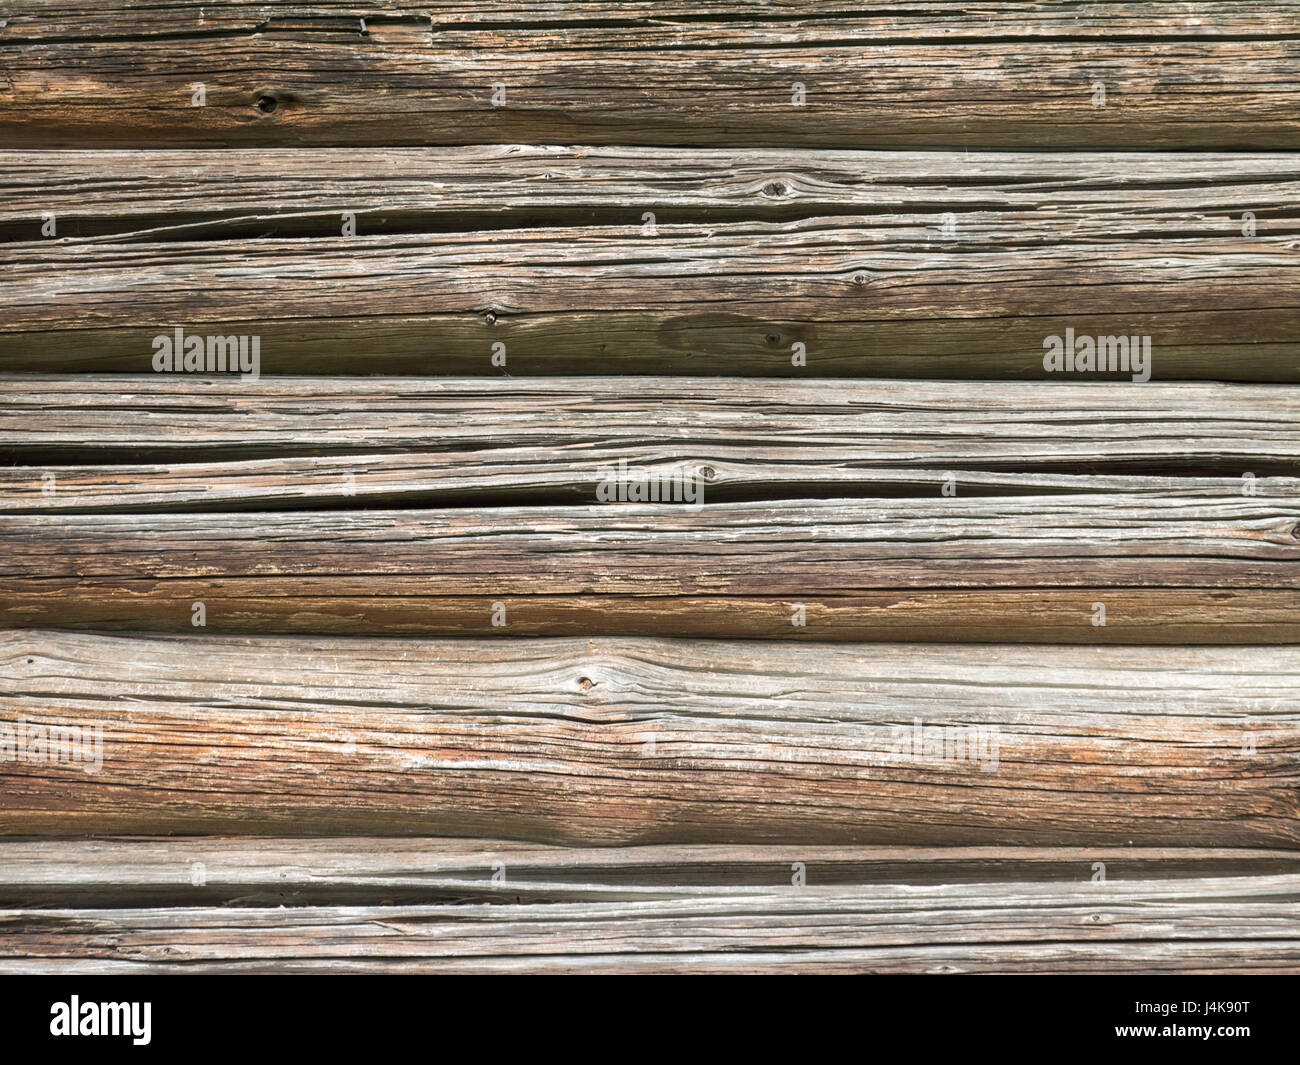 Alte hölzerne verwitterte Holz Kabinenwand mit Rissen Hintergrund Stockfoto